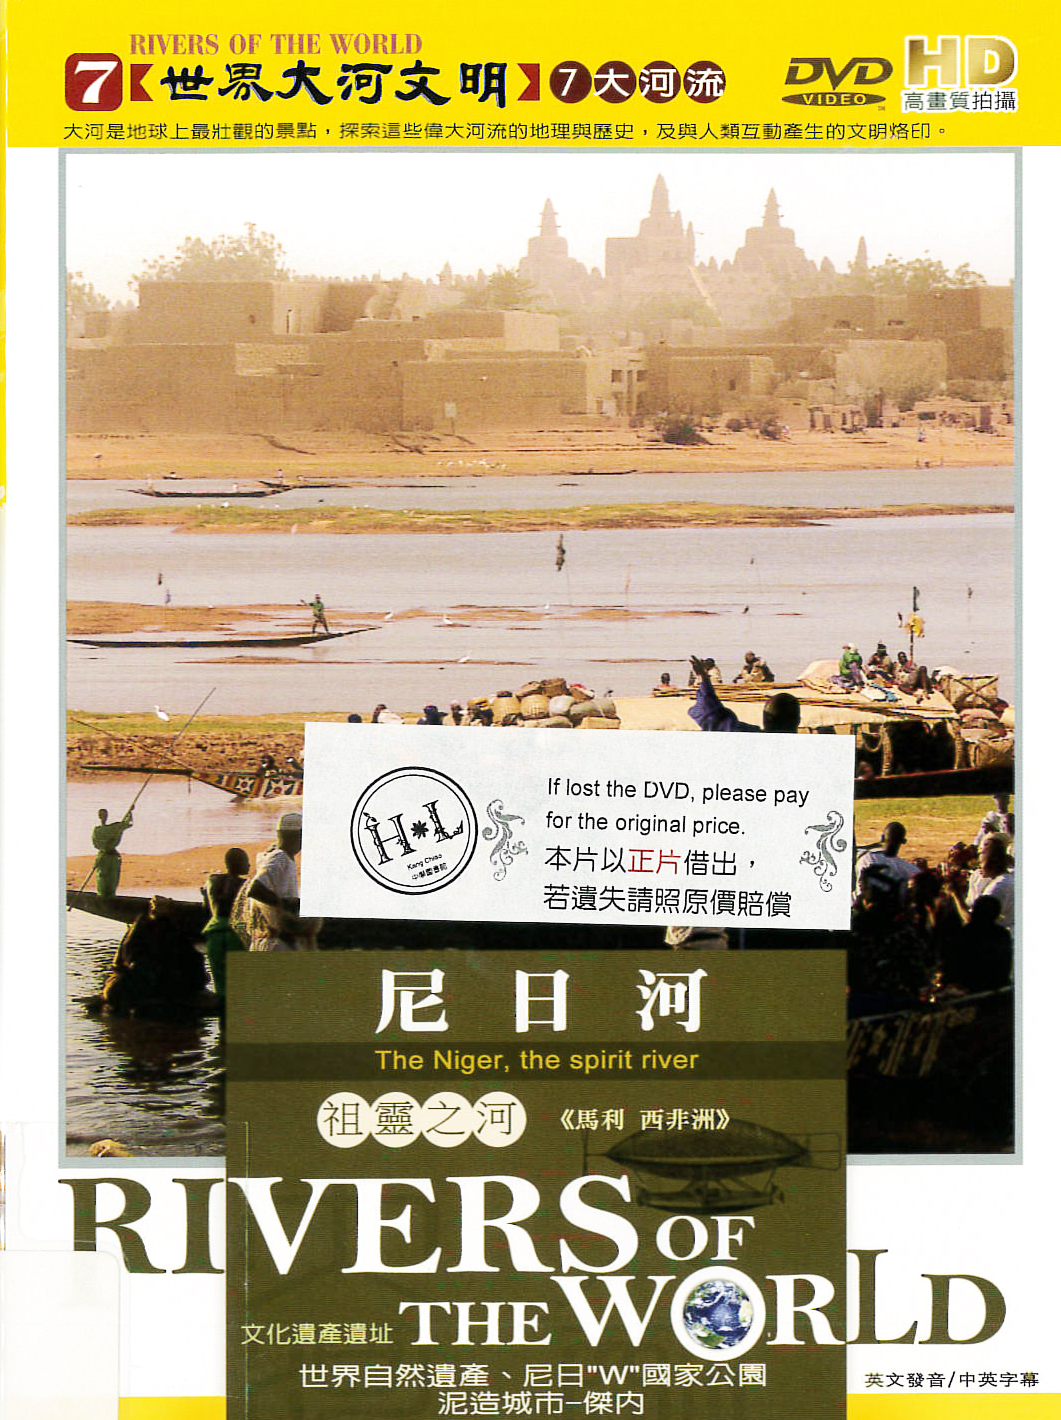 尼日河 : The Niger, the spirit river : 祖靈之河<<馬利 西非洲>>